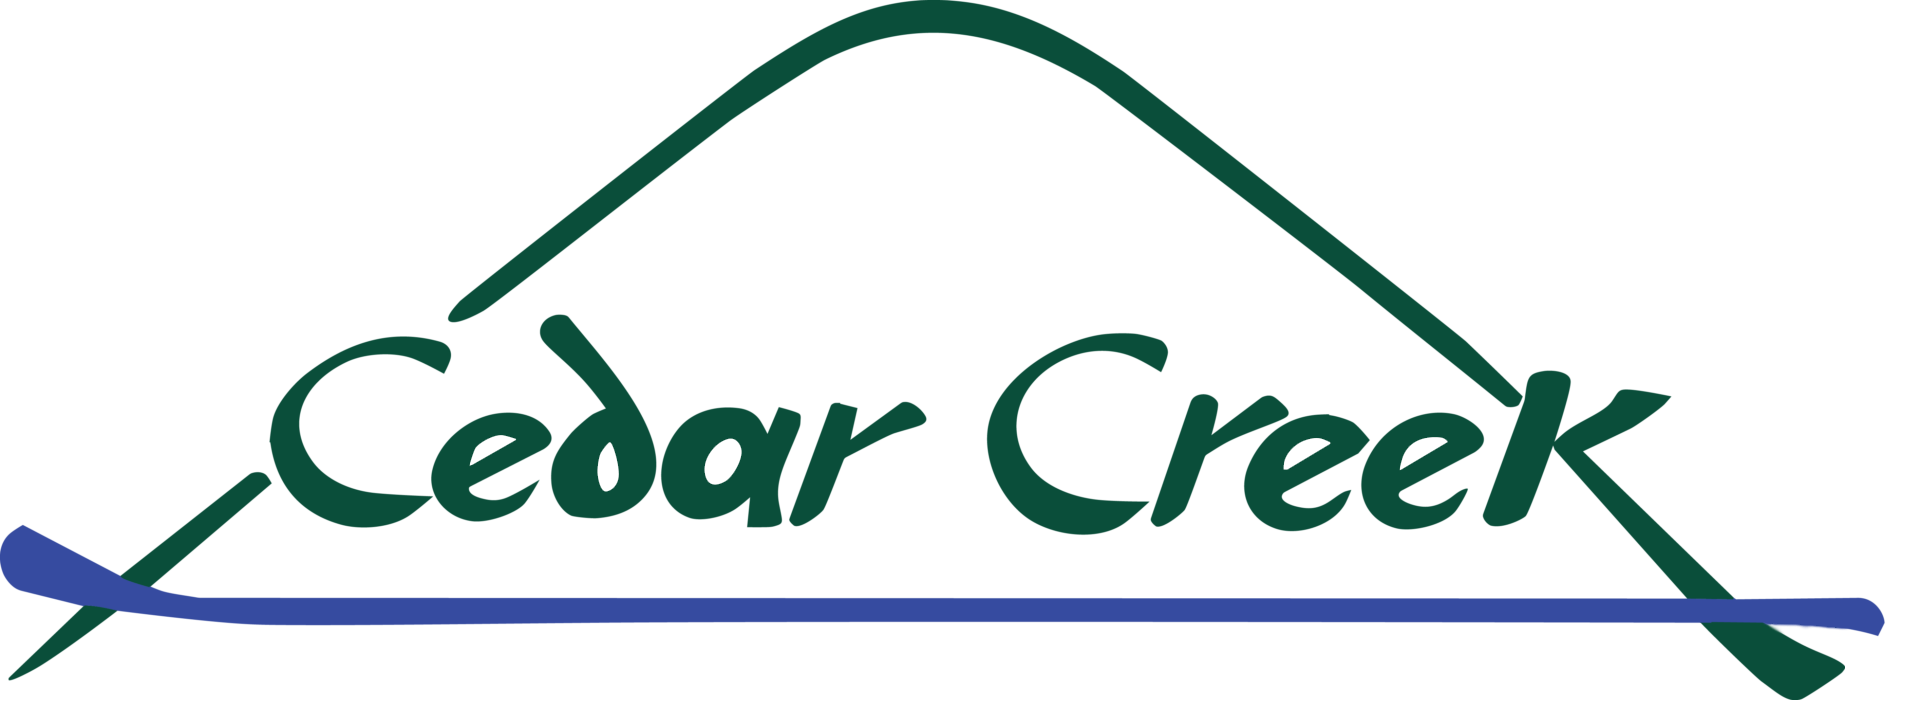 Cedar-Creek-Logo3